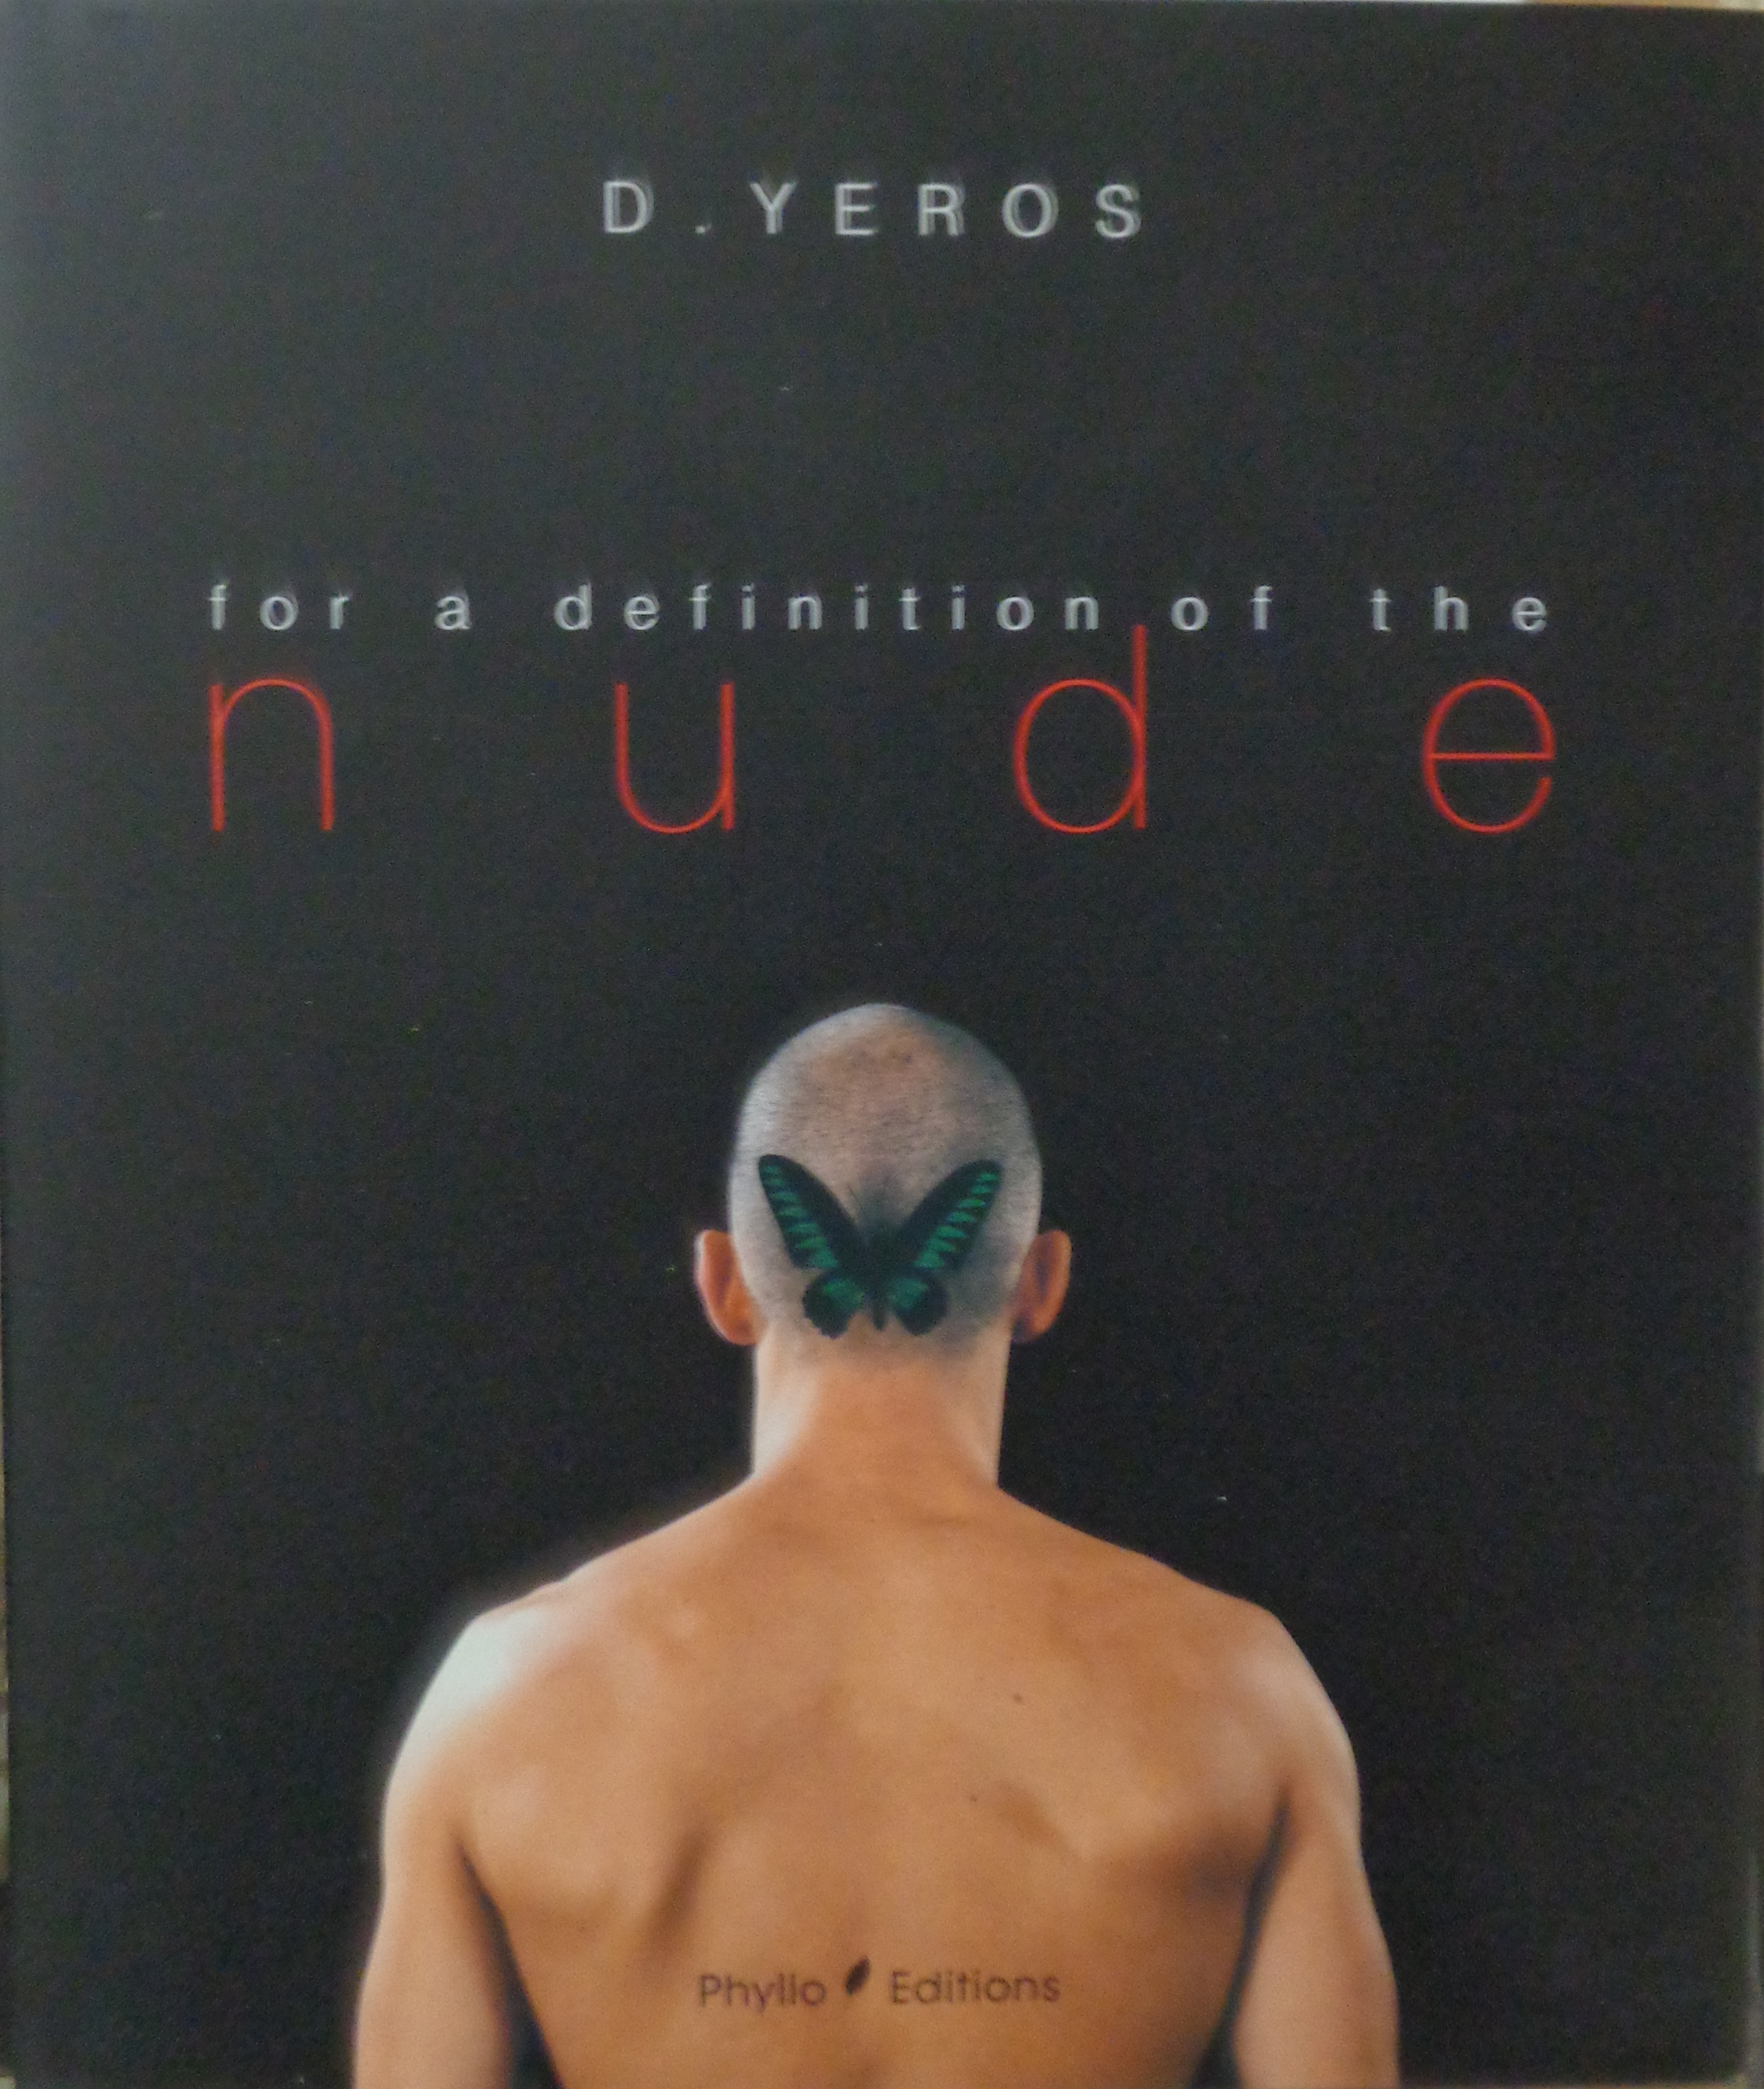 ΓΕΡΟΣ ΔΗΜΗΤΡΗΣ  YEROS D.  For a Definition of the Nude, with an introduction by P. Weiermair   Phyllo edition 2000  ΜΕ ΑΦΙΕΡΩΣΗ 